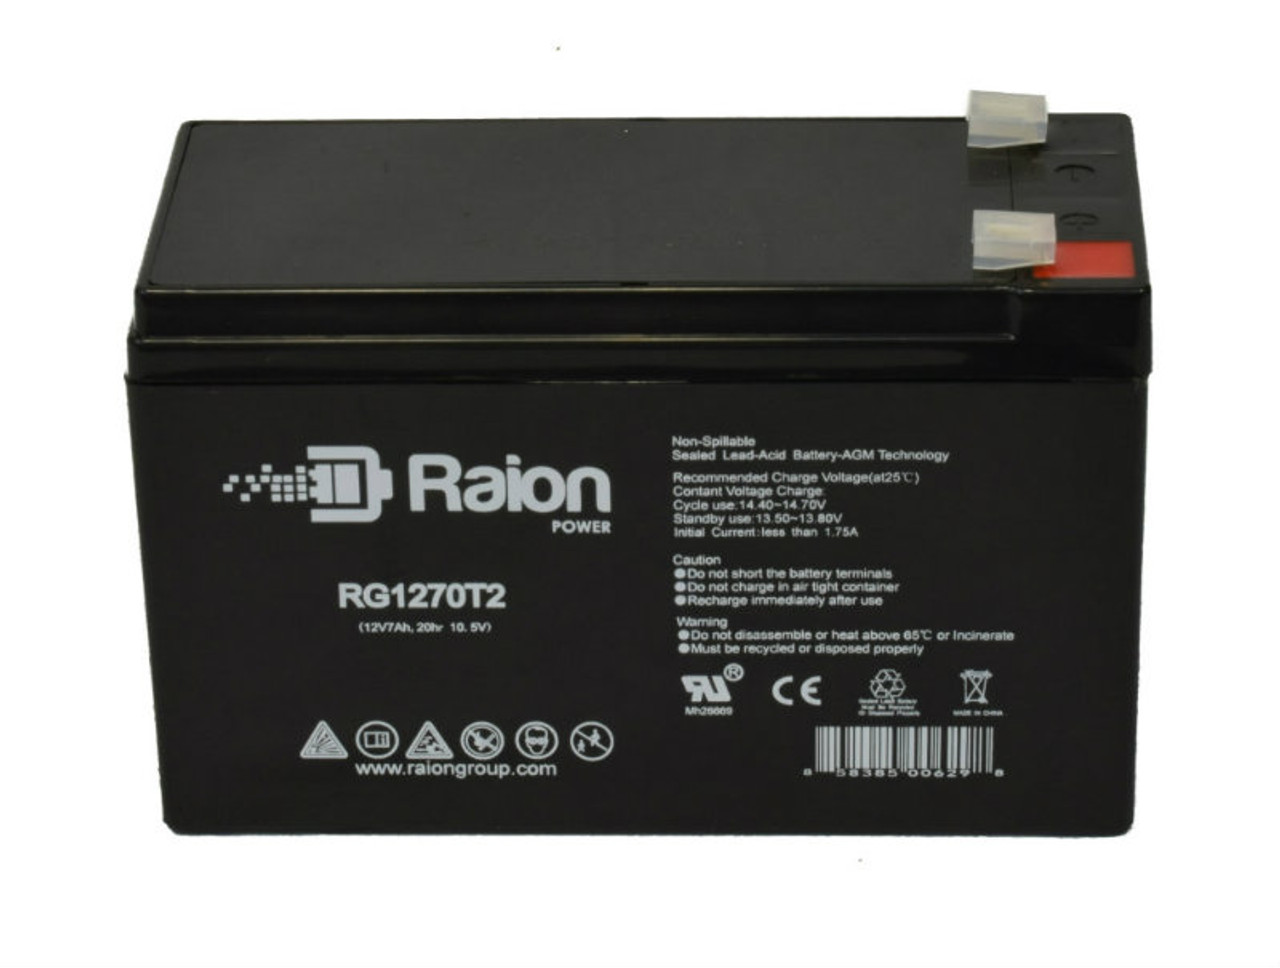 Raion Power RG1270T1 12V 7Ah Lead Acid Battery for Medical Data E270037SC7